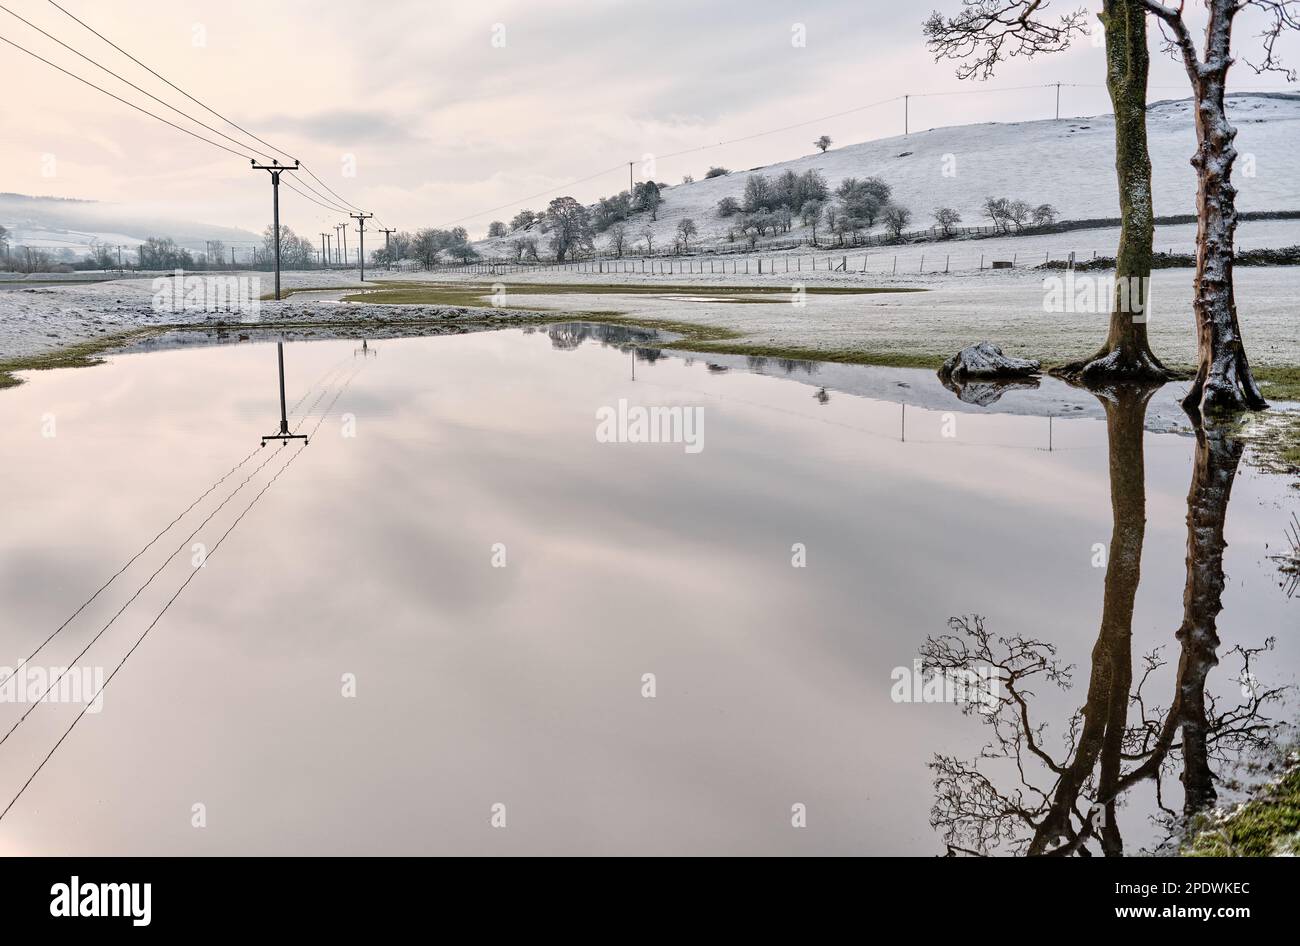 Felder, die zum Weiden von Schafen verwendet werden, die vom Fluss Aire überflutet und mit Schnee bedeckt sind, sodass klare Reflexionen im Hochwasser entstehen Stockfoto